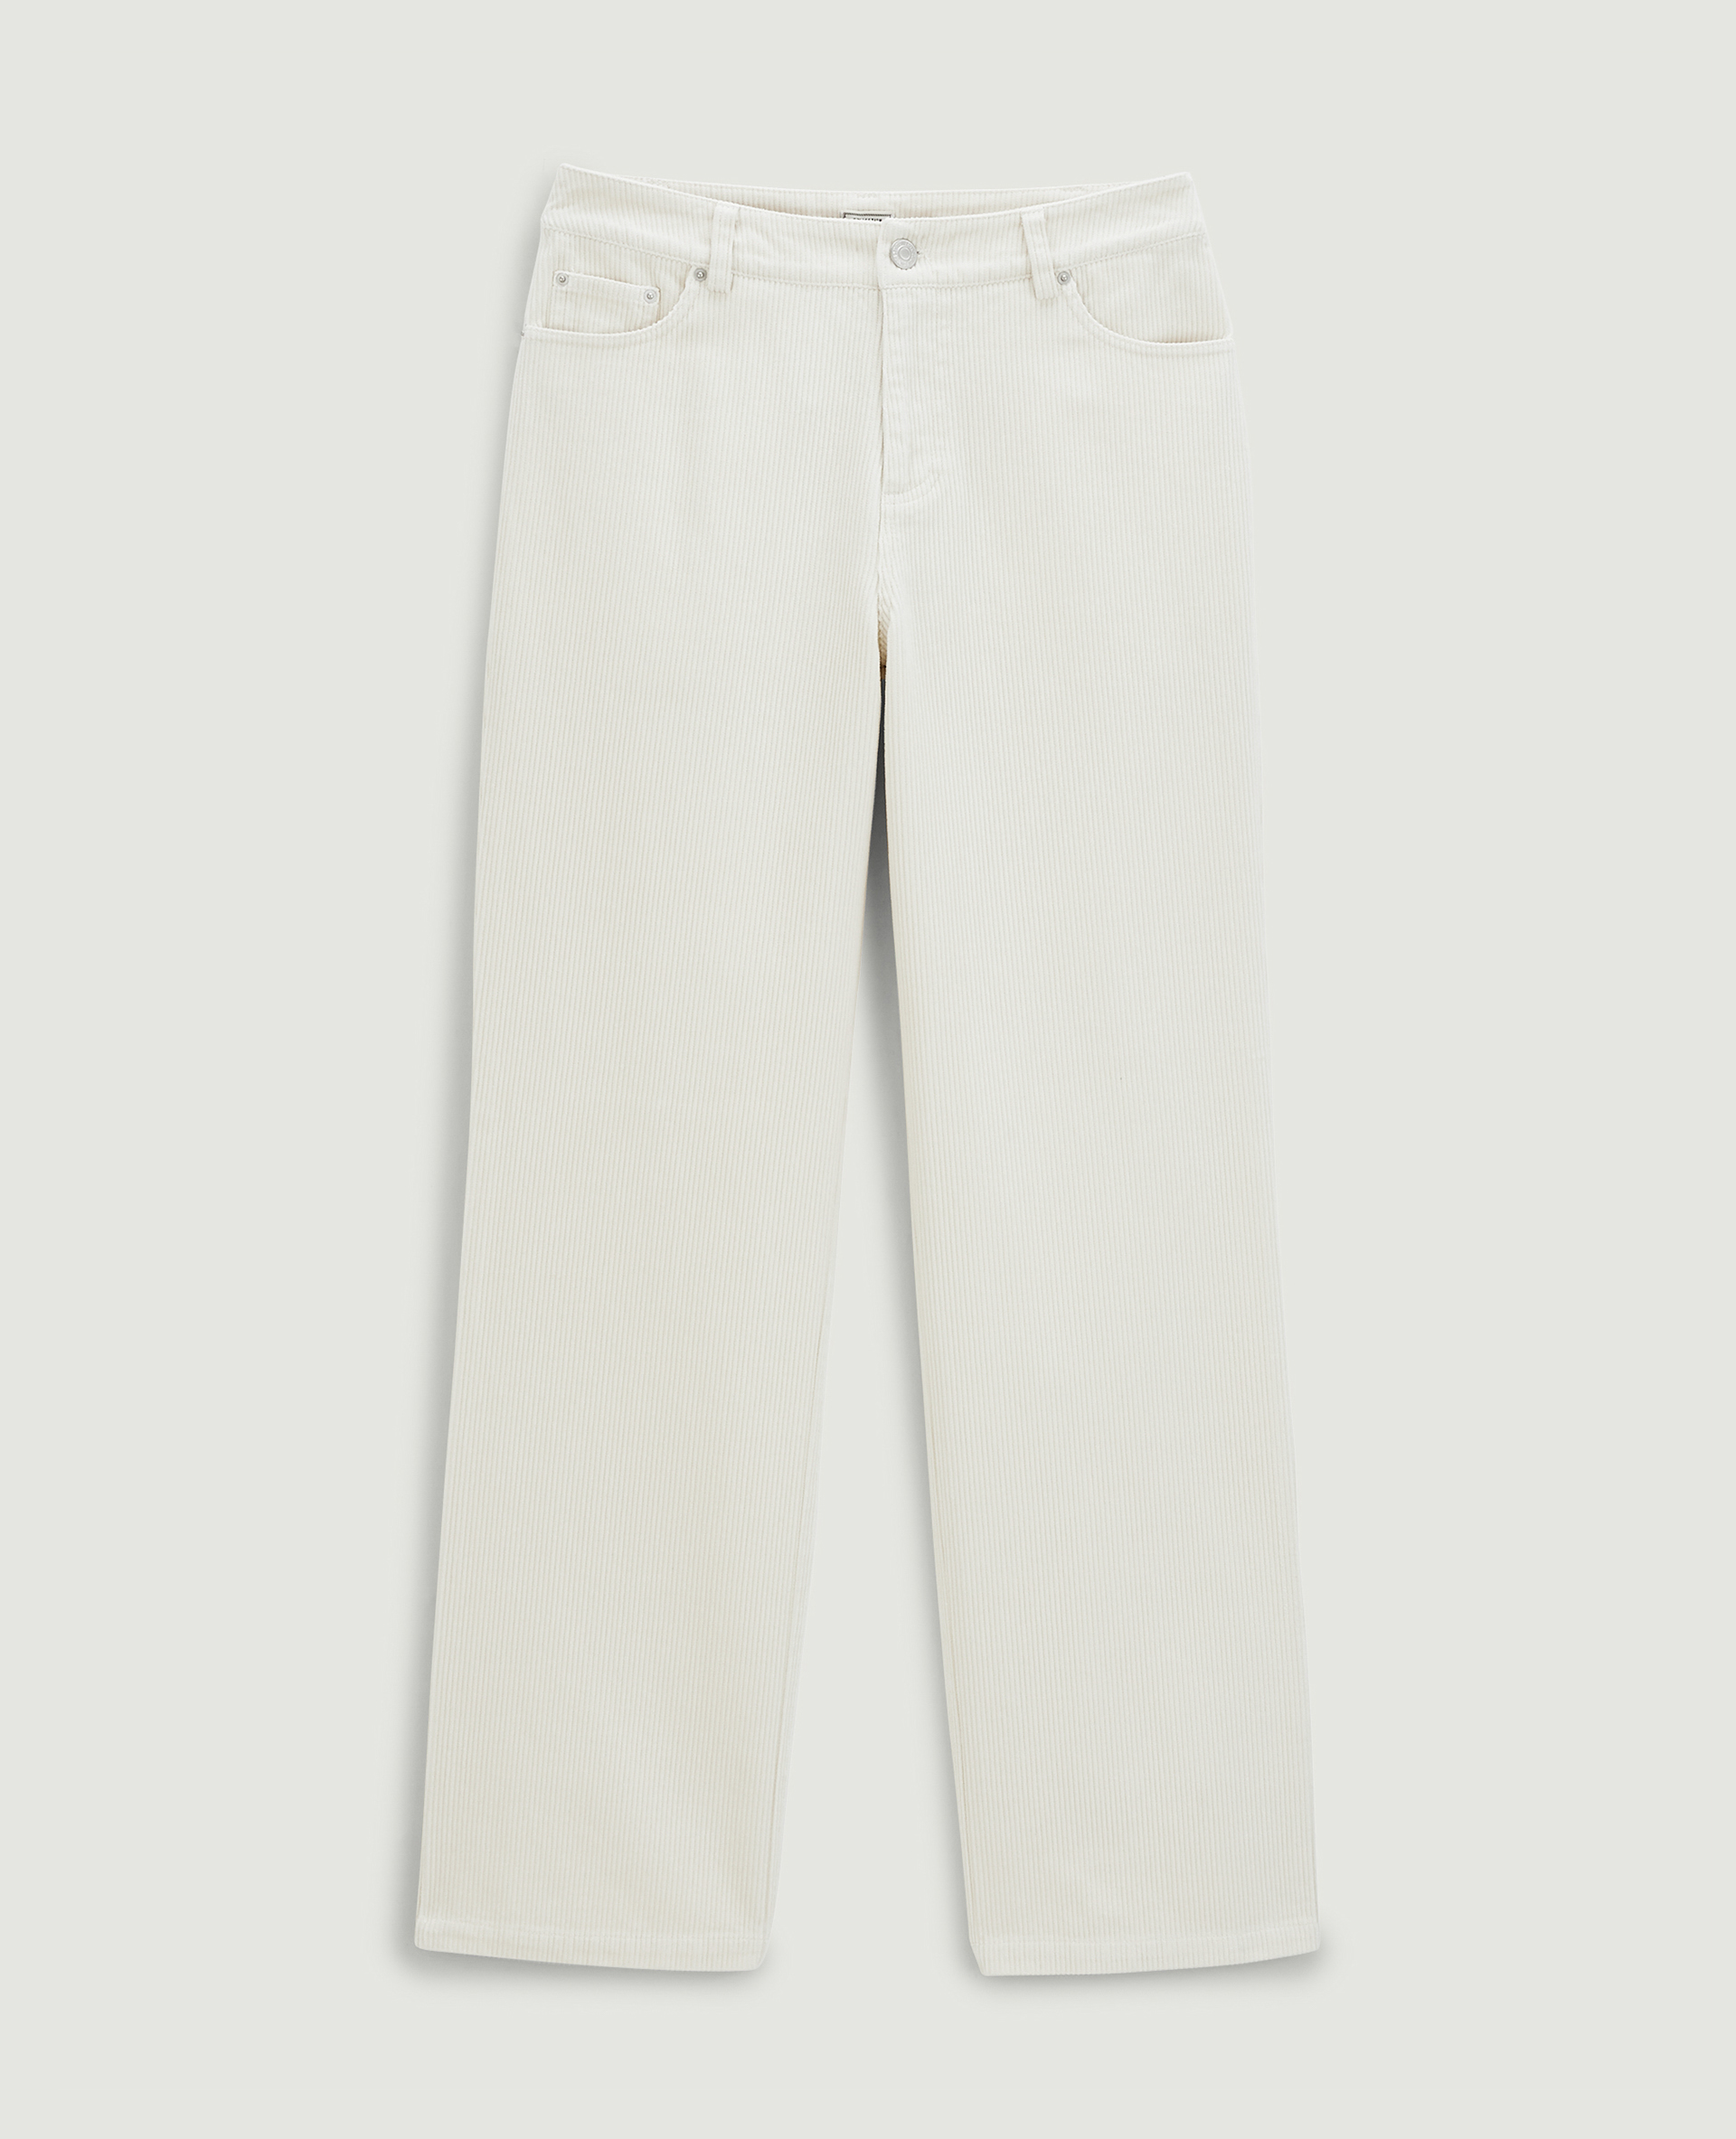 Pantalon droit en velours côtelé blanc - Pimkie